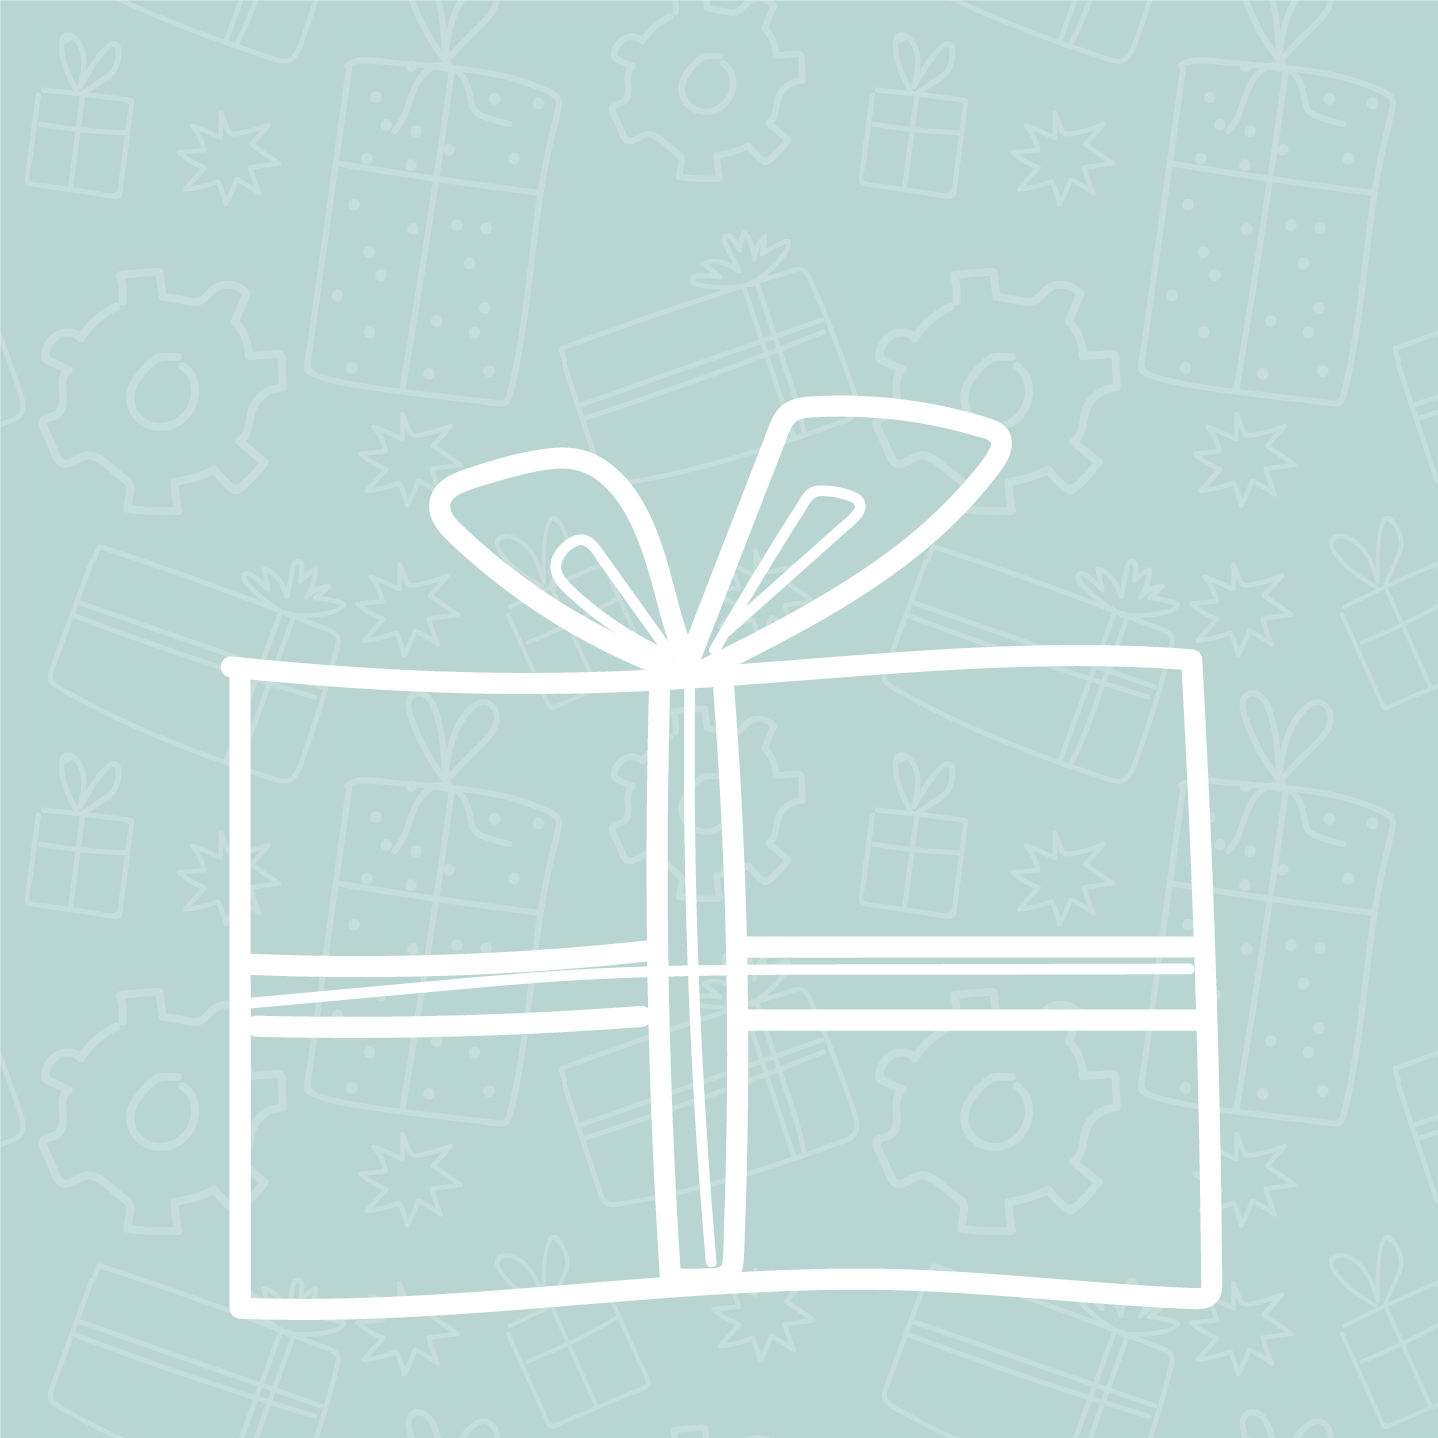 Blog - Noël : 8 idées de cadeaux pour votre personnel avant les vacances de fin d'année